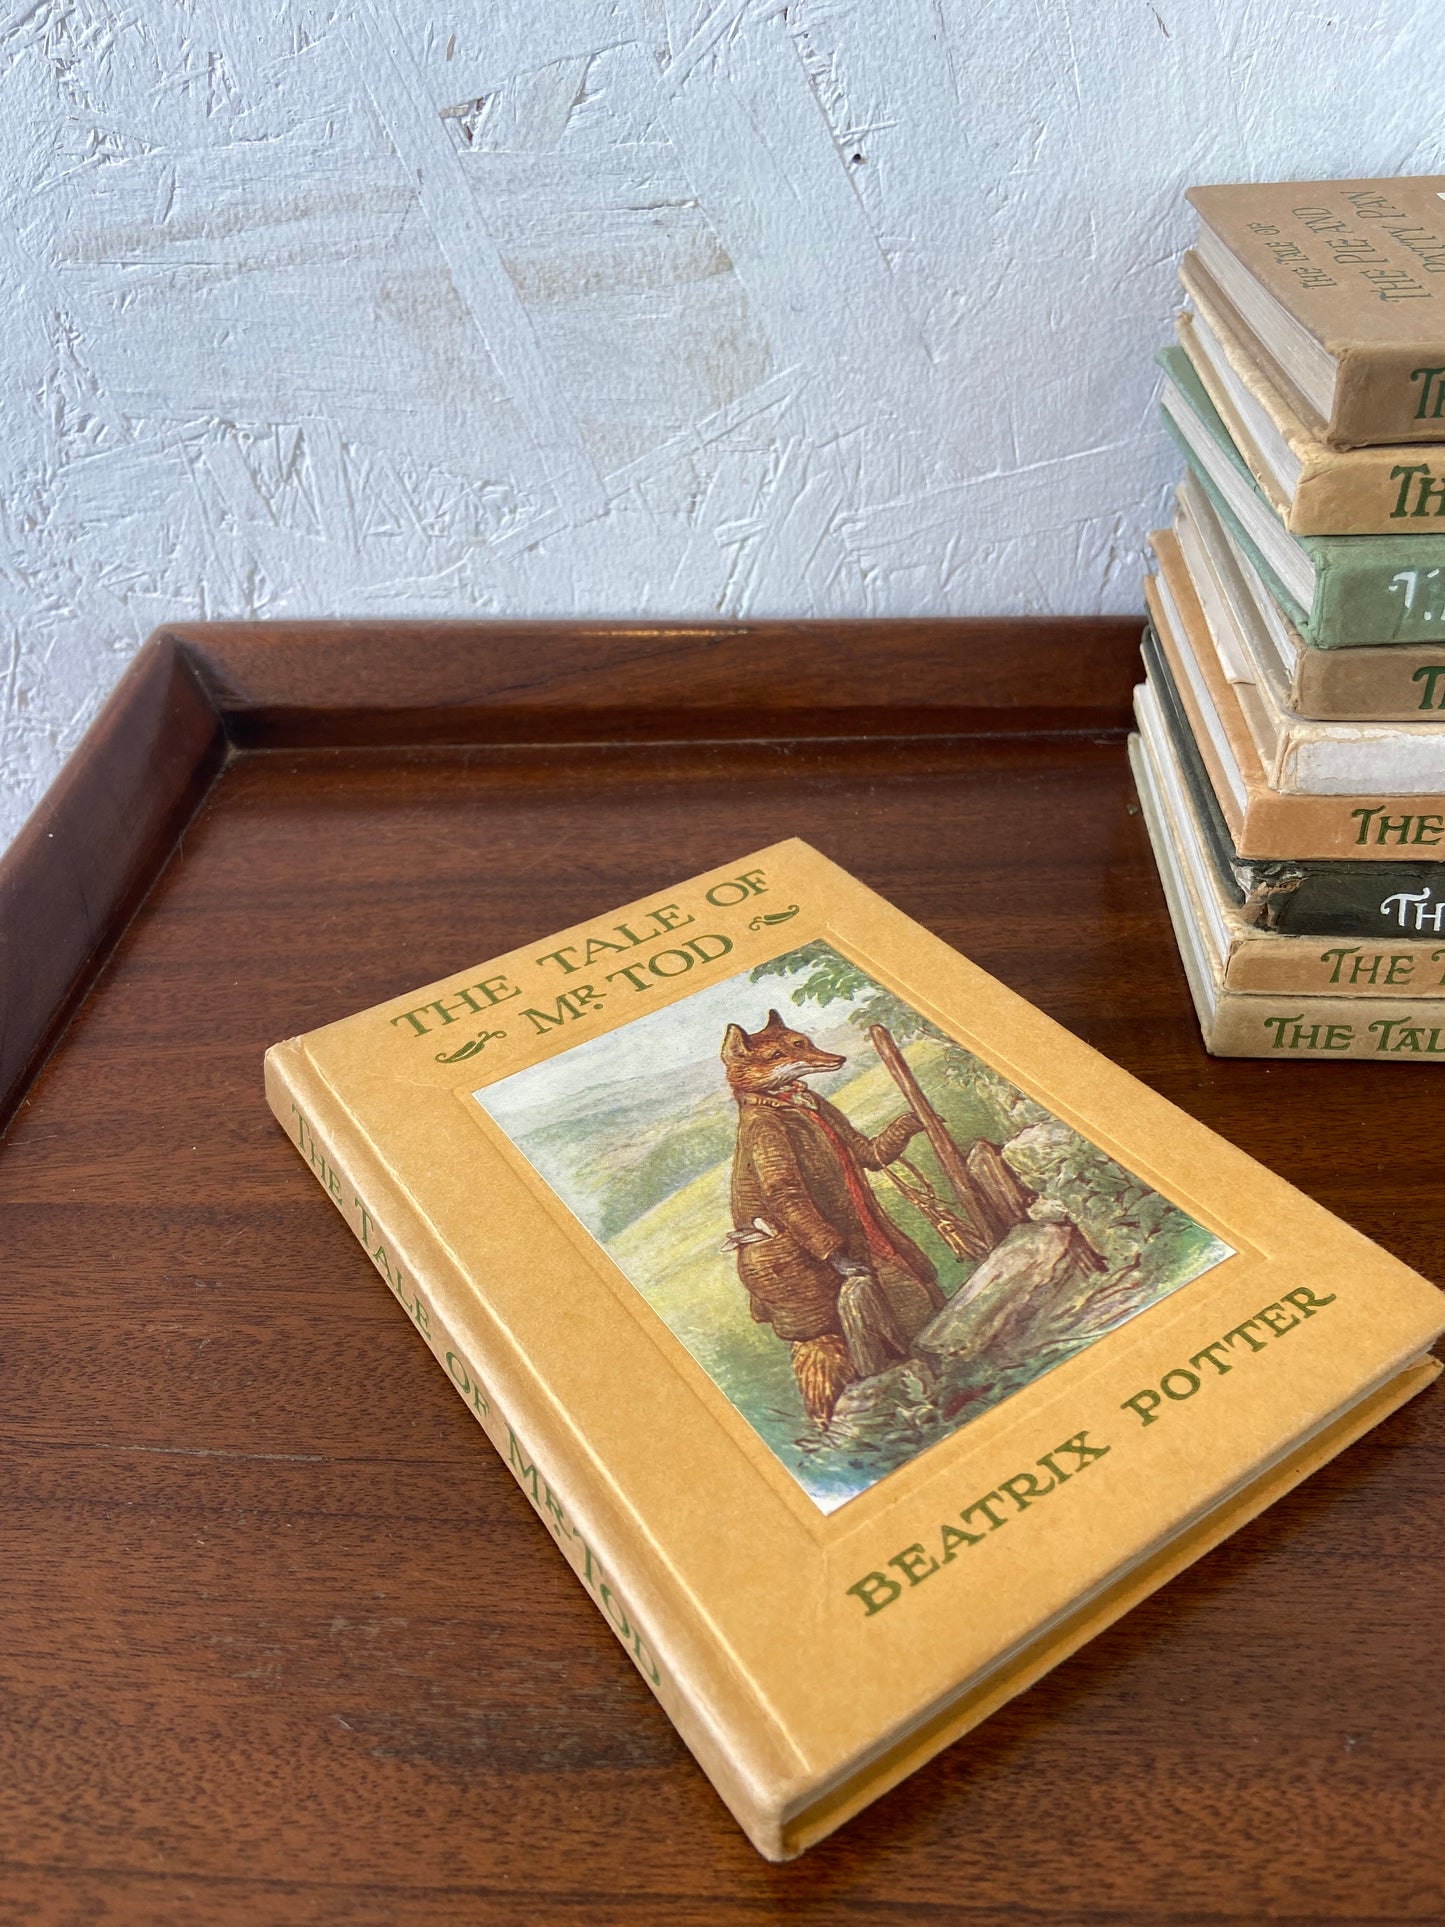 Vintage Beatrix Potter Books